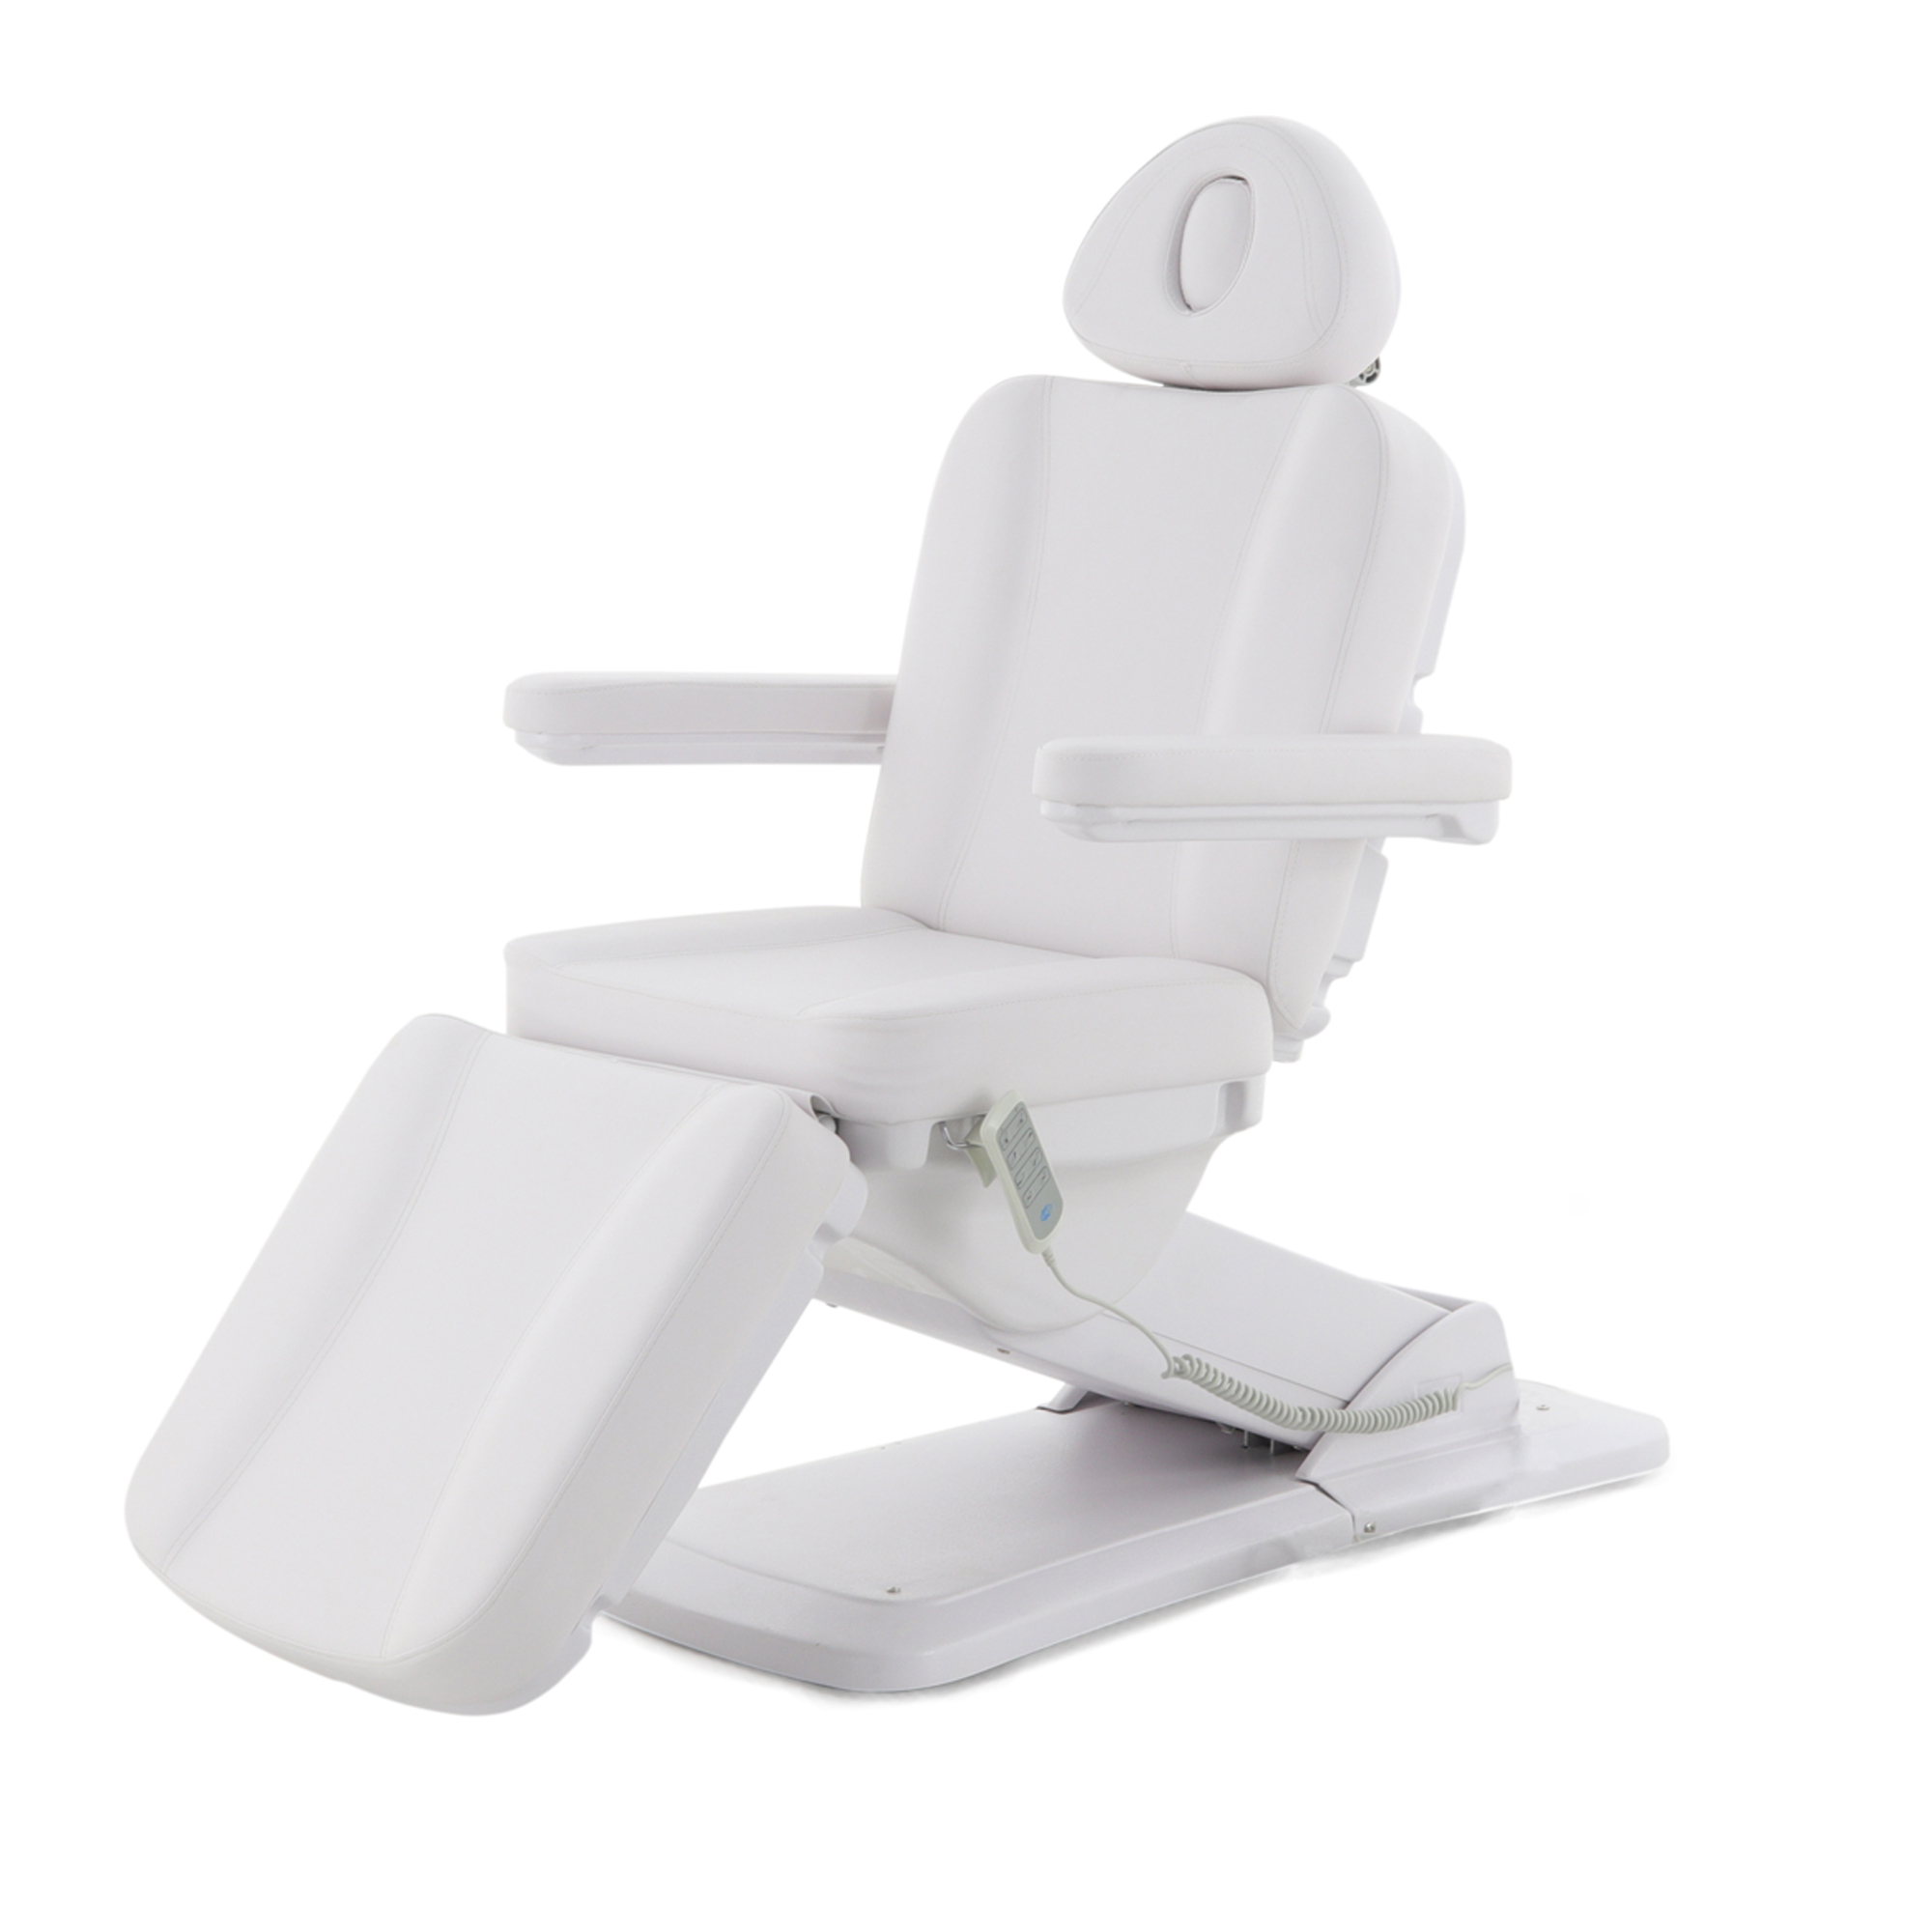 Косметологическое кресло электрическое 4 мотора Med-Mos ММКК-4 (KO-185DP) с РУ - 2 